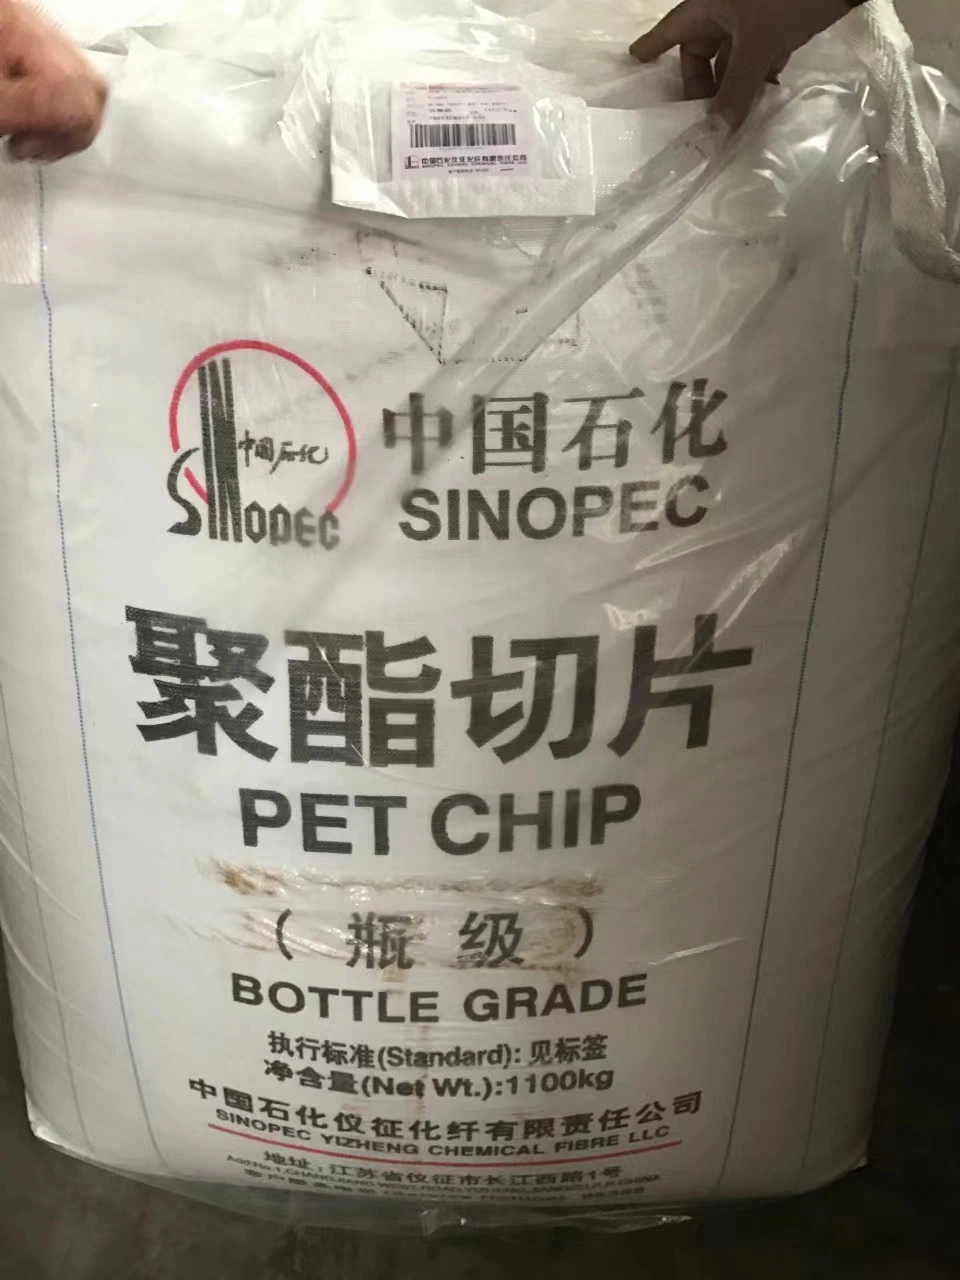 Gránulos de tereftalato de polietileno virgen y reciclado / resina de mascotas para Botellas de agua de plástico